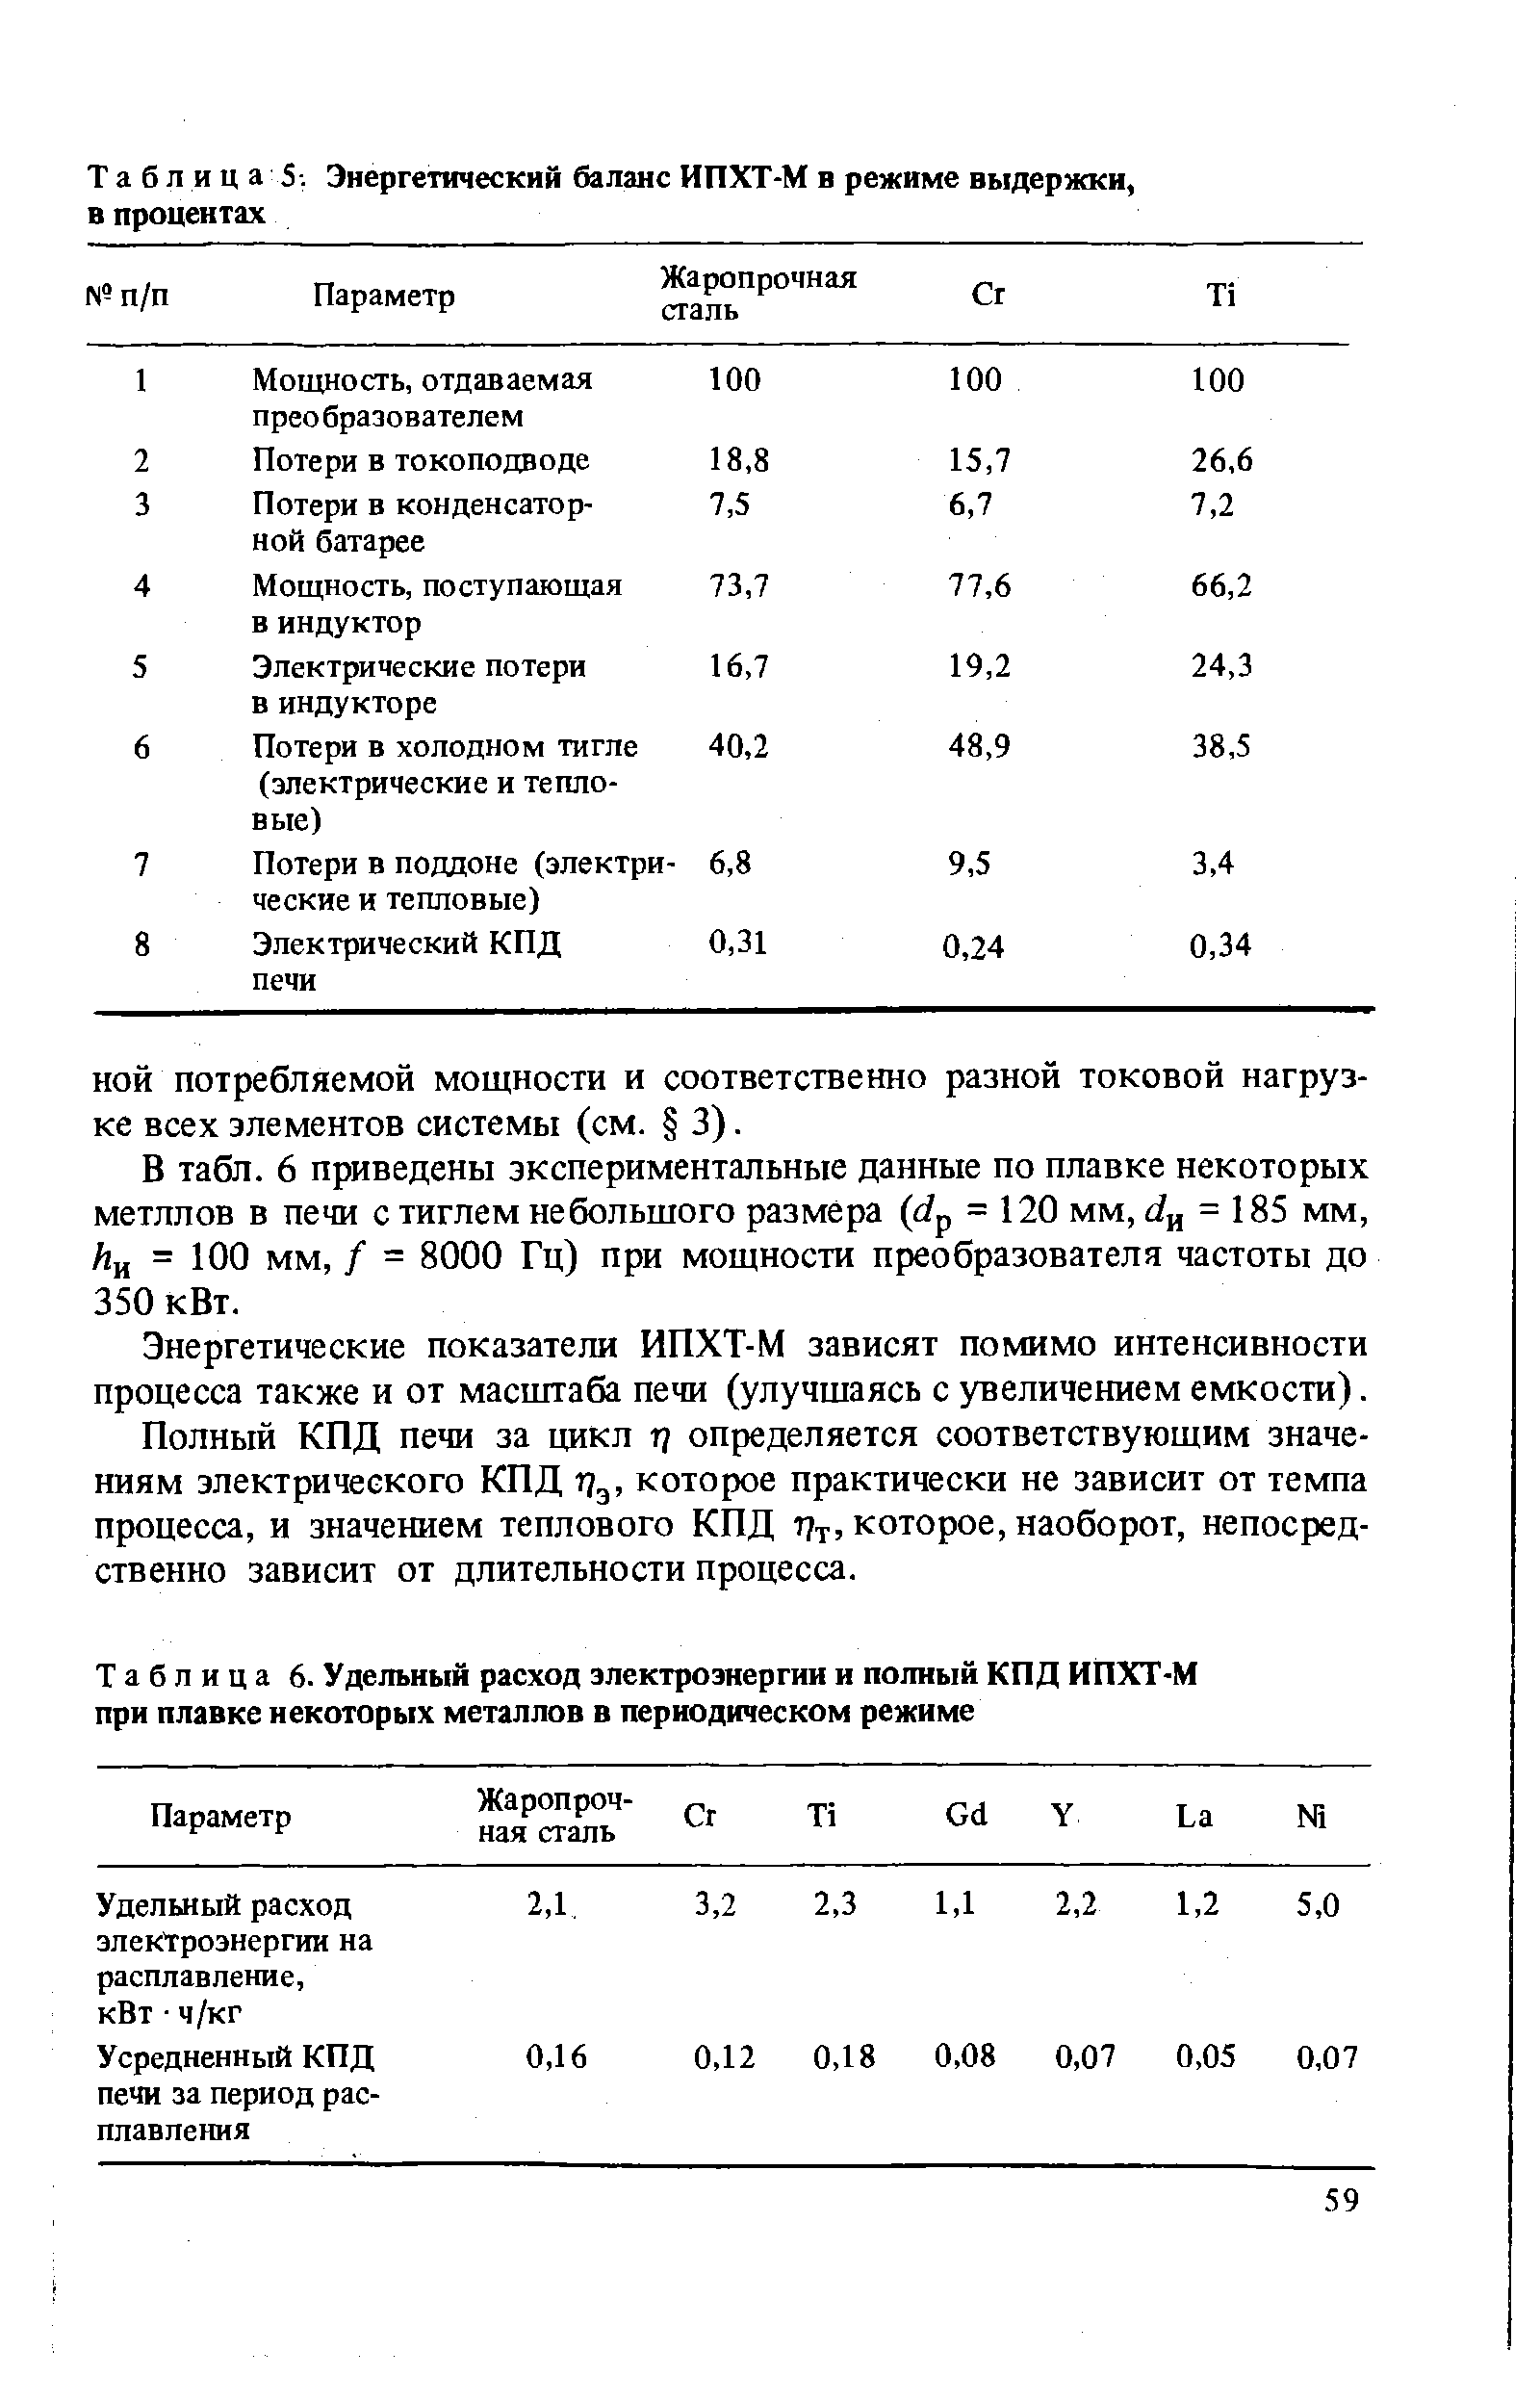 Таблица 6. <a href="/info/94773">Удельный расход электроэнергии</a> и полный КПД ИПХТ-М при плавке некоторых металлов в периодическом режиме
